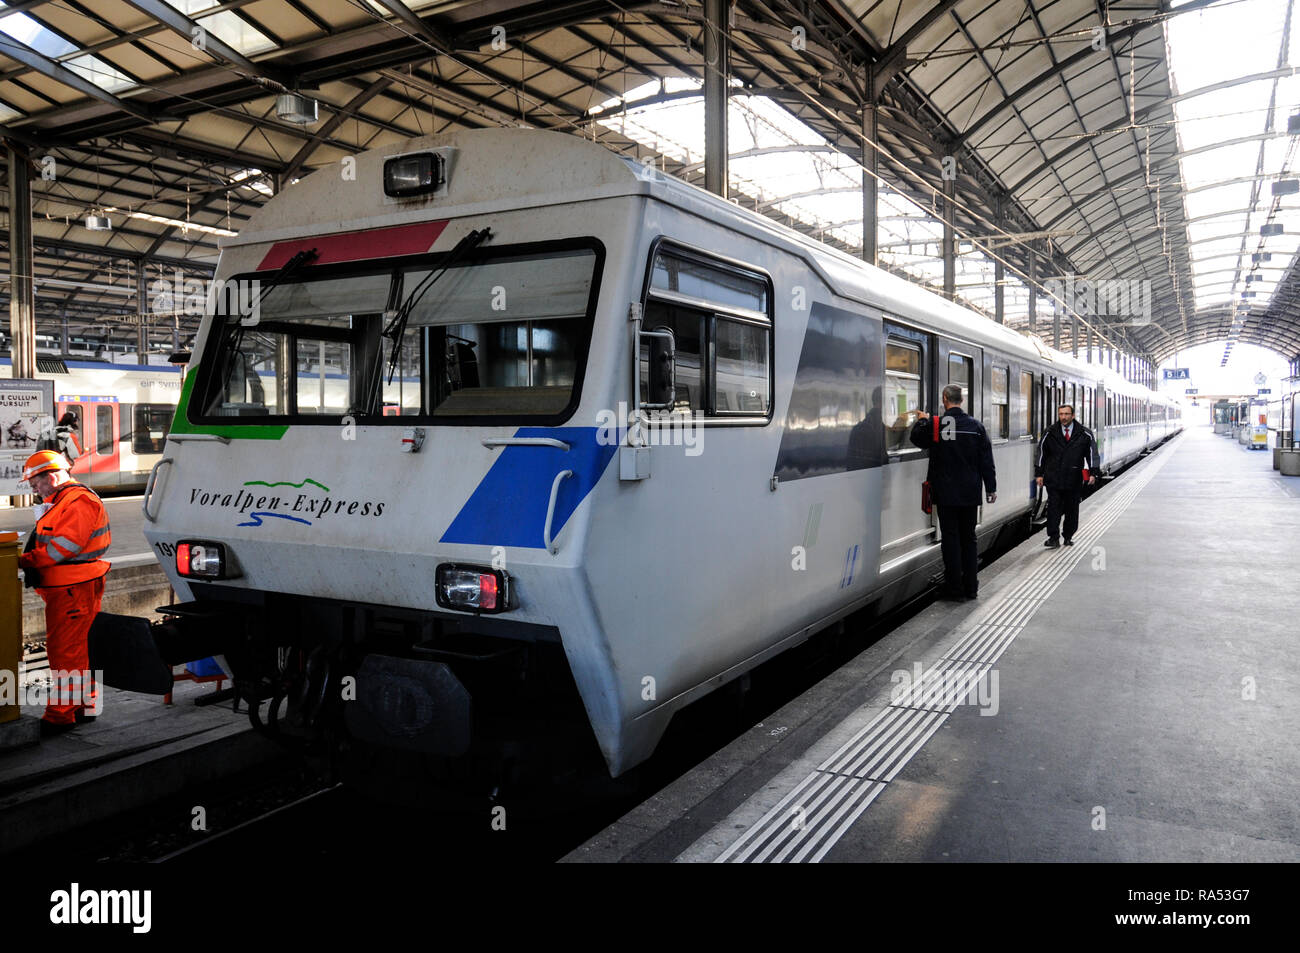 The Voralpen Express at Luzern rail station in Switzerland Stock Photo